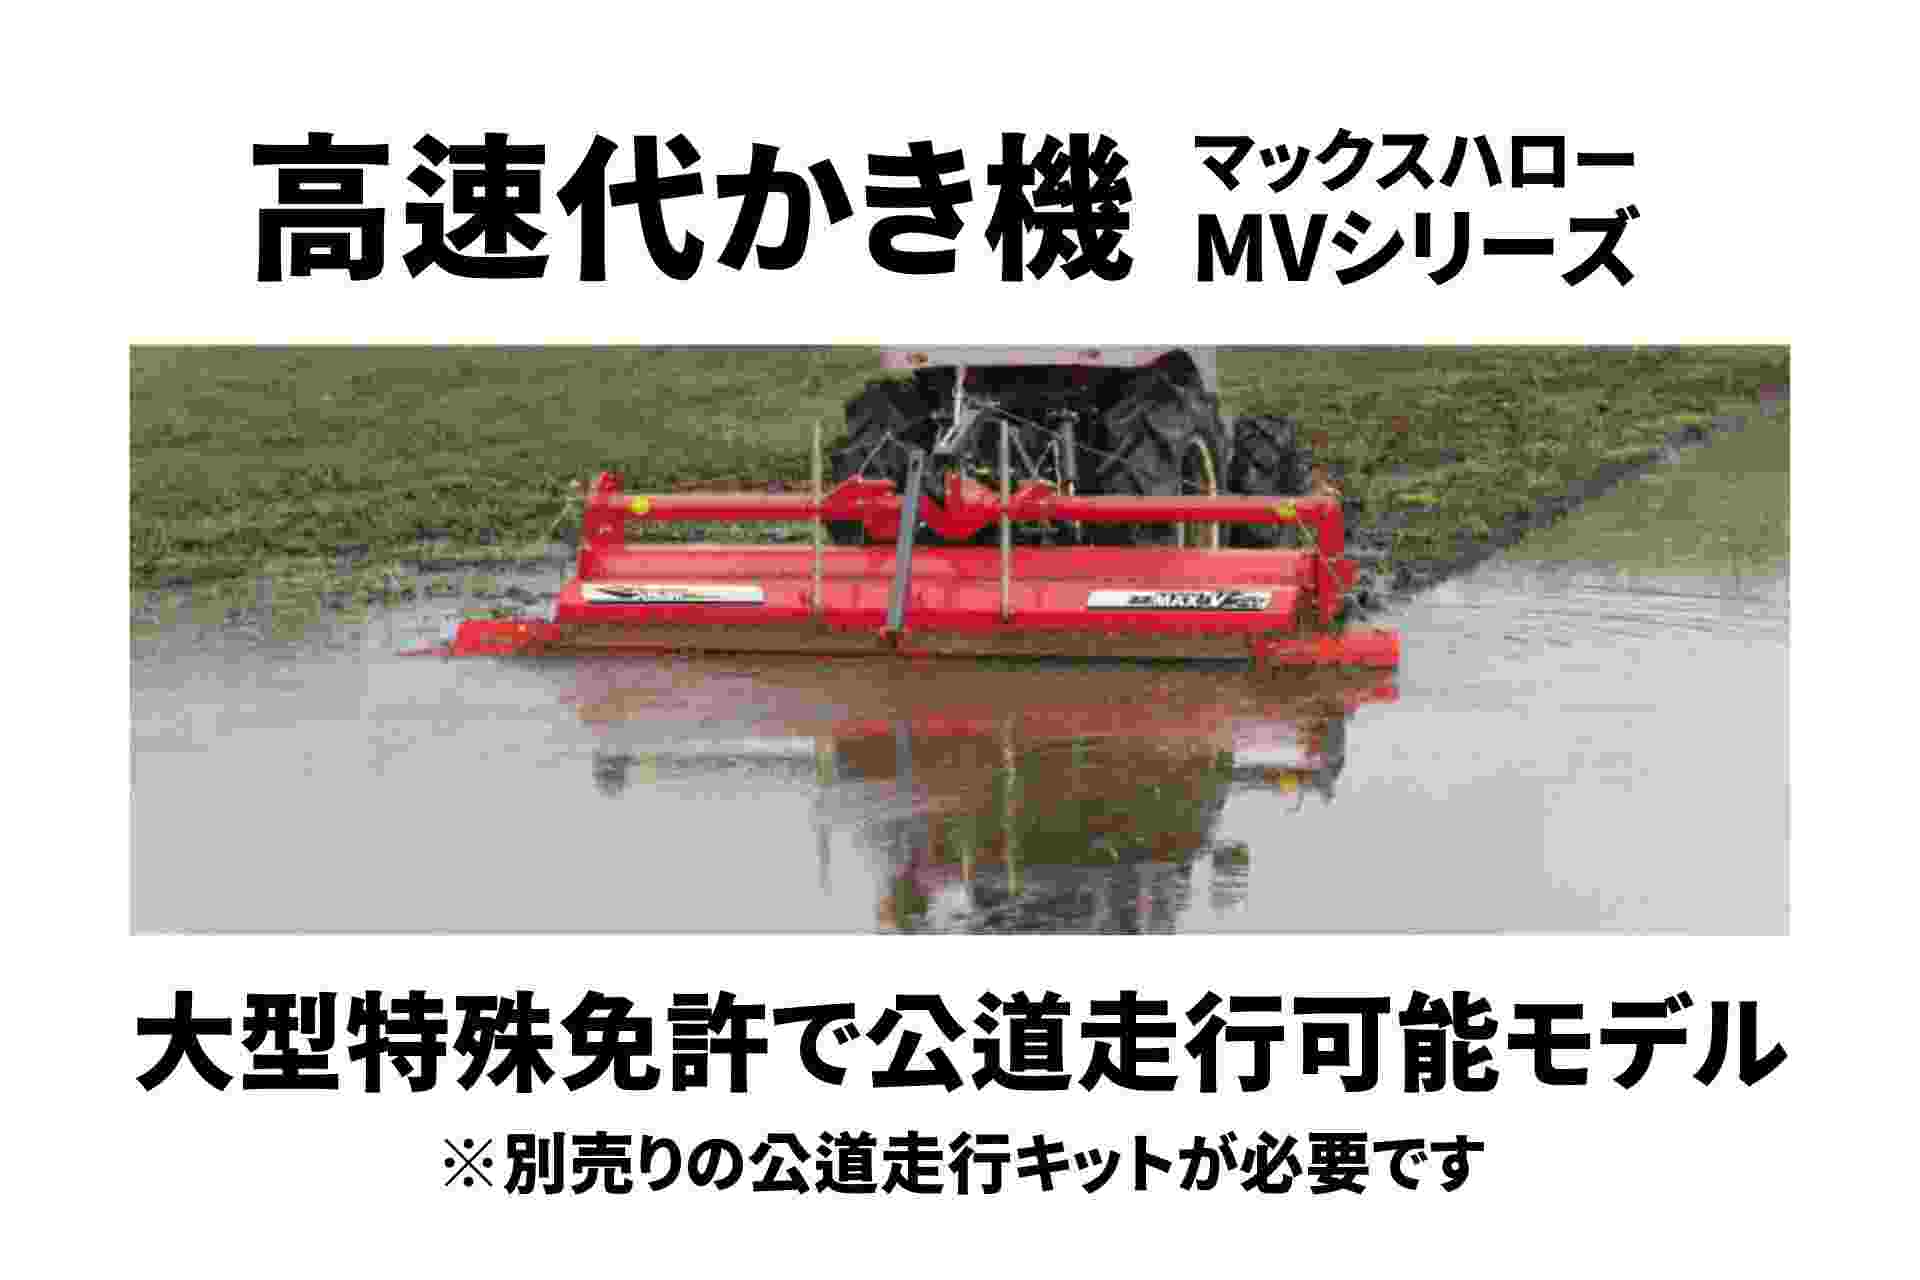 高速代かき機 マックスハロー ドライブハロー ササキ MVシリーズ MV220TL-4S